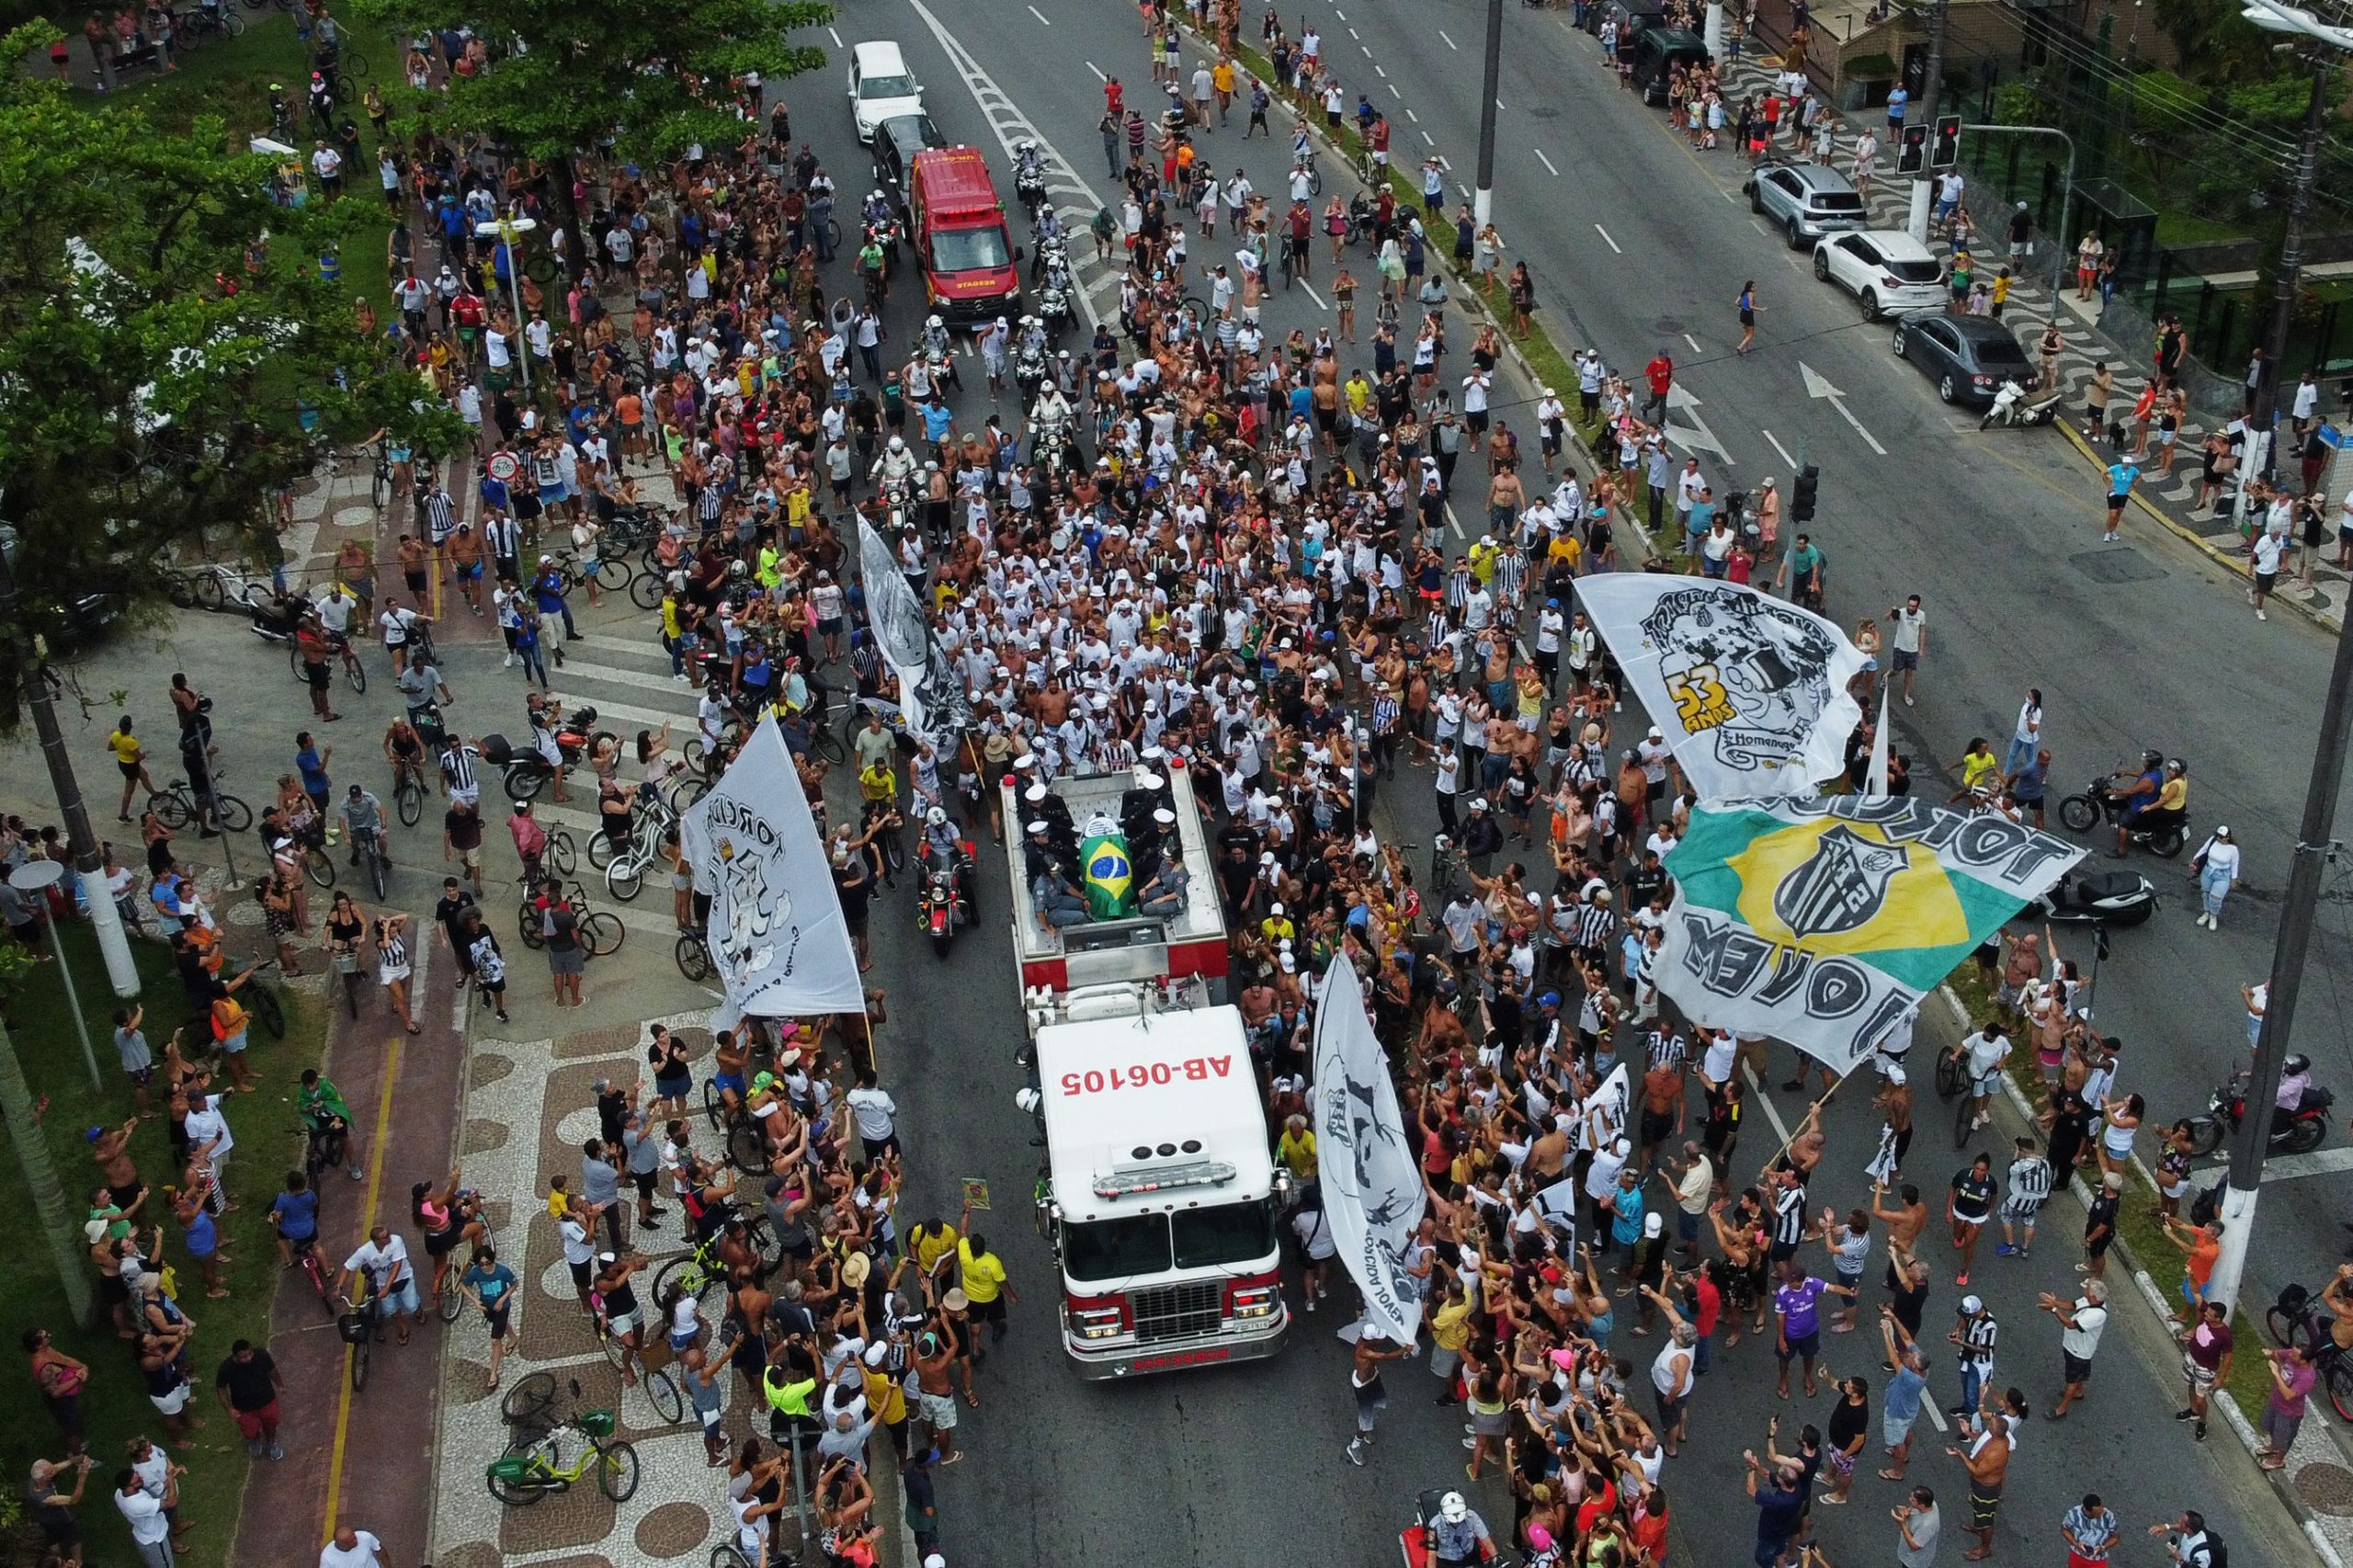 巴西球王比利将安葬　23万人排队瞻仰遗容道别